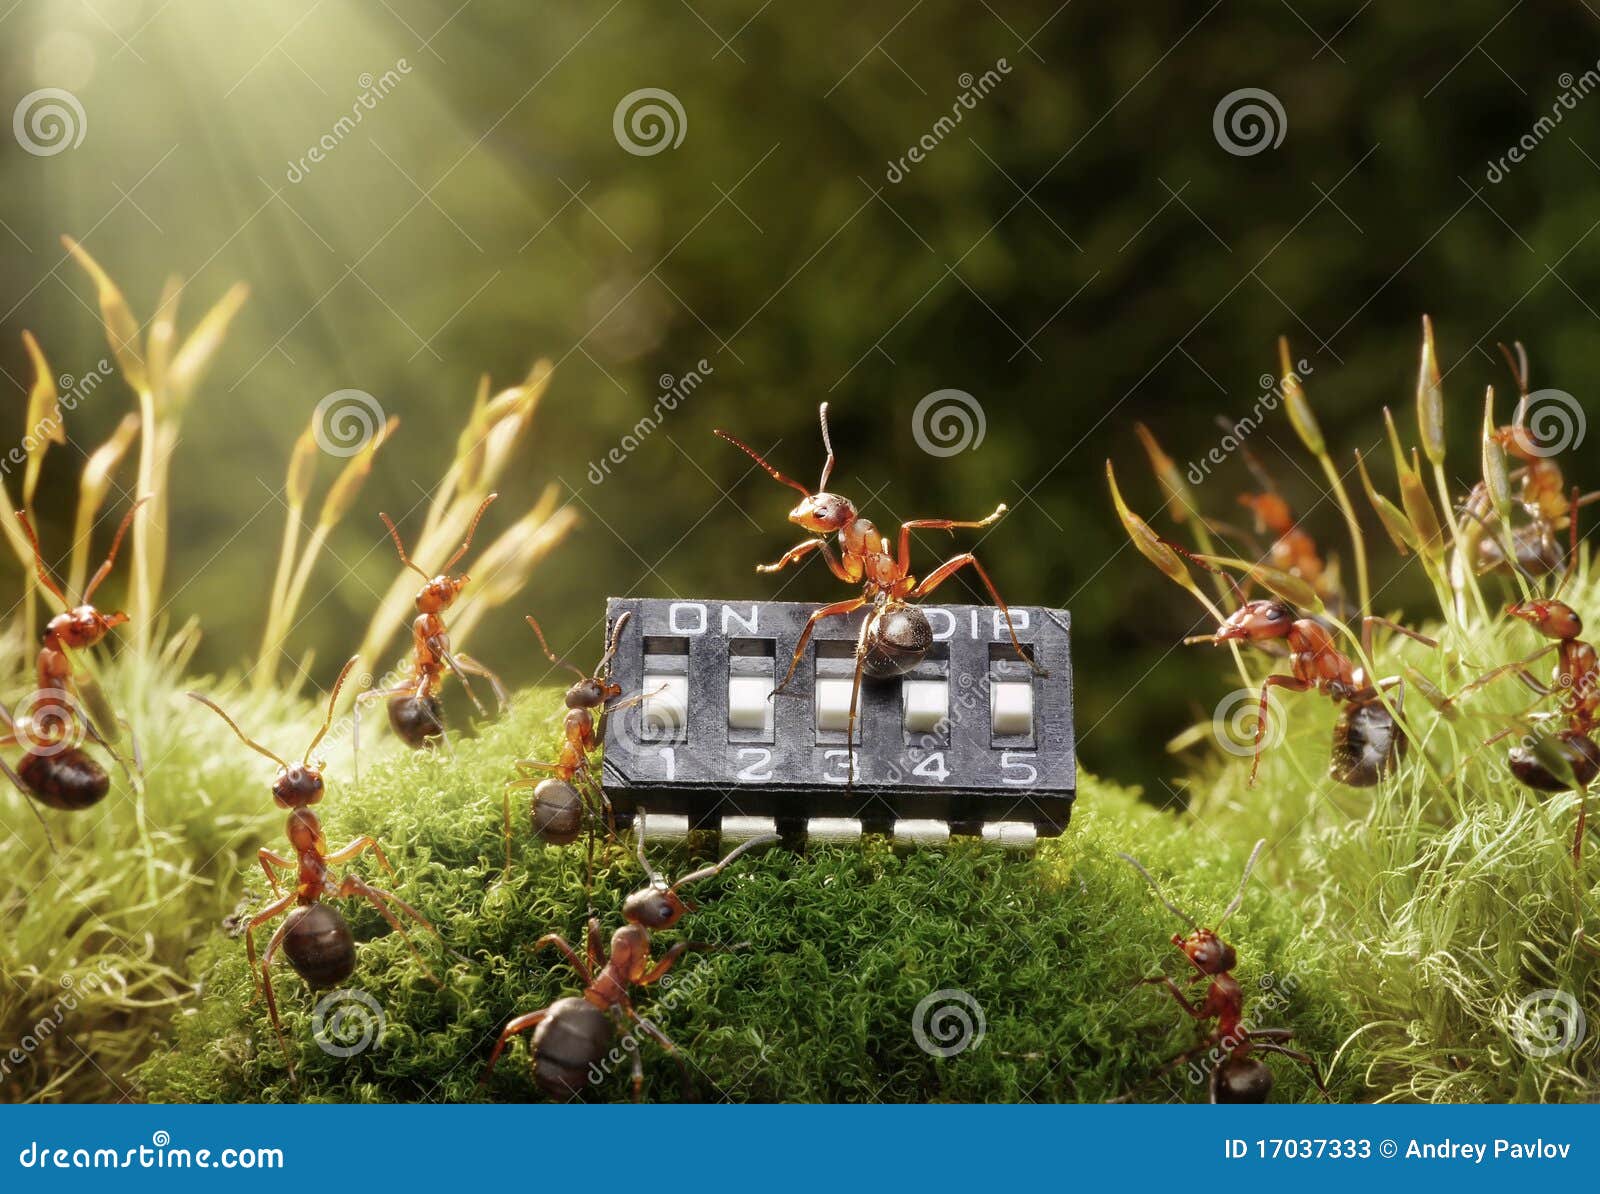 ants play music on microchip, fairytale